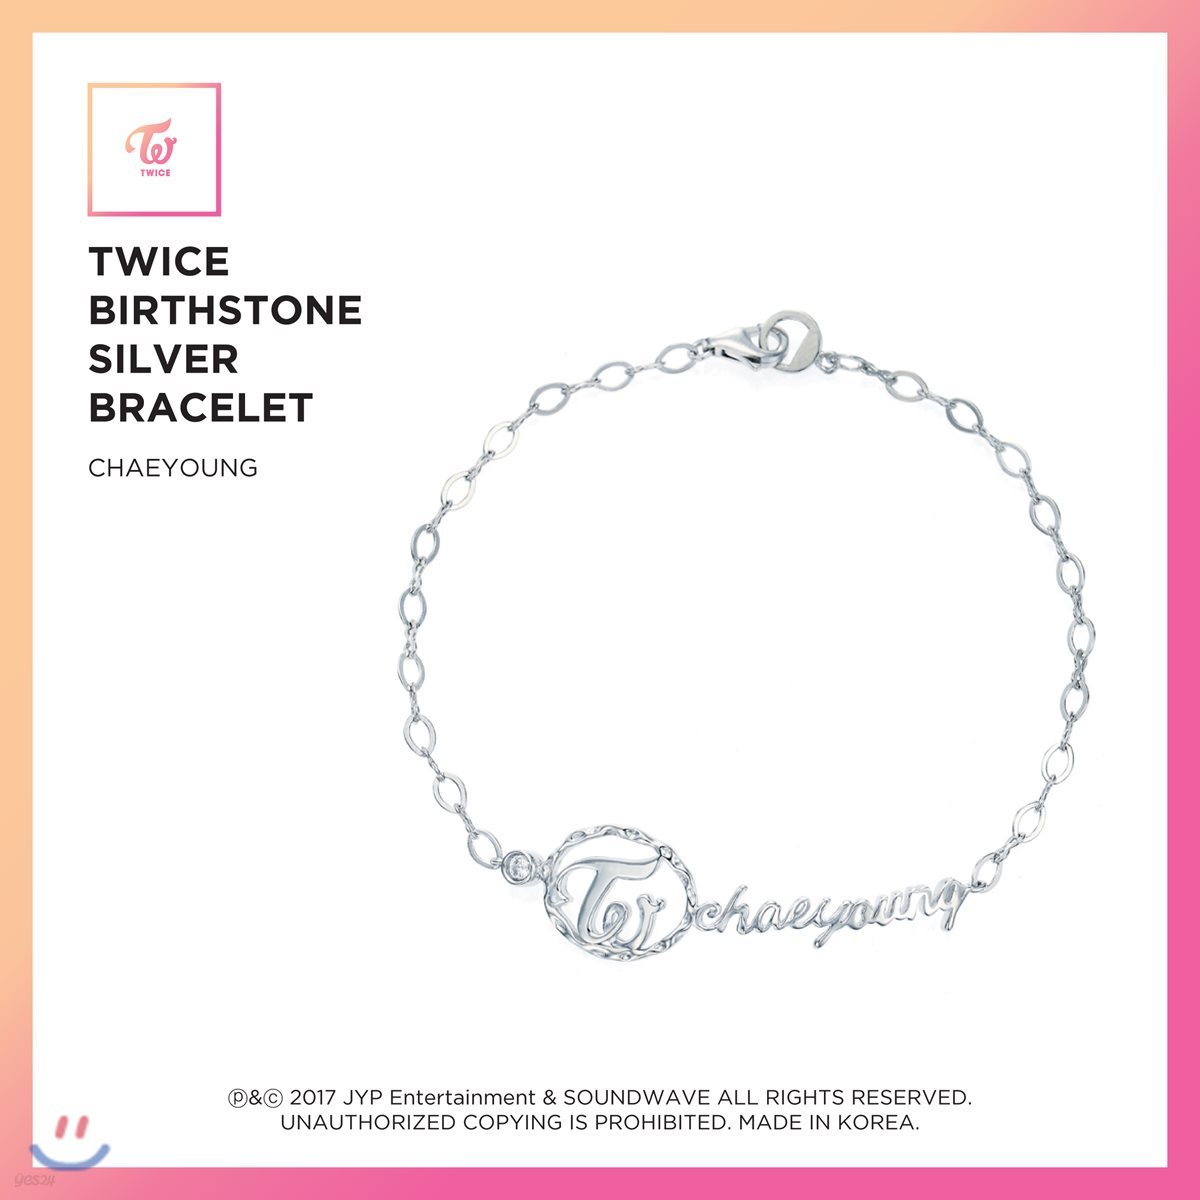 트와이스 (TWICE) - TWICE Birthstone Silver Bracelet [Chaeyoung]